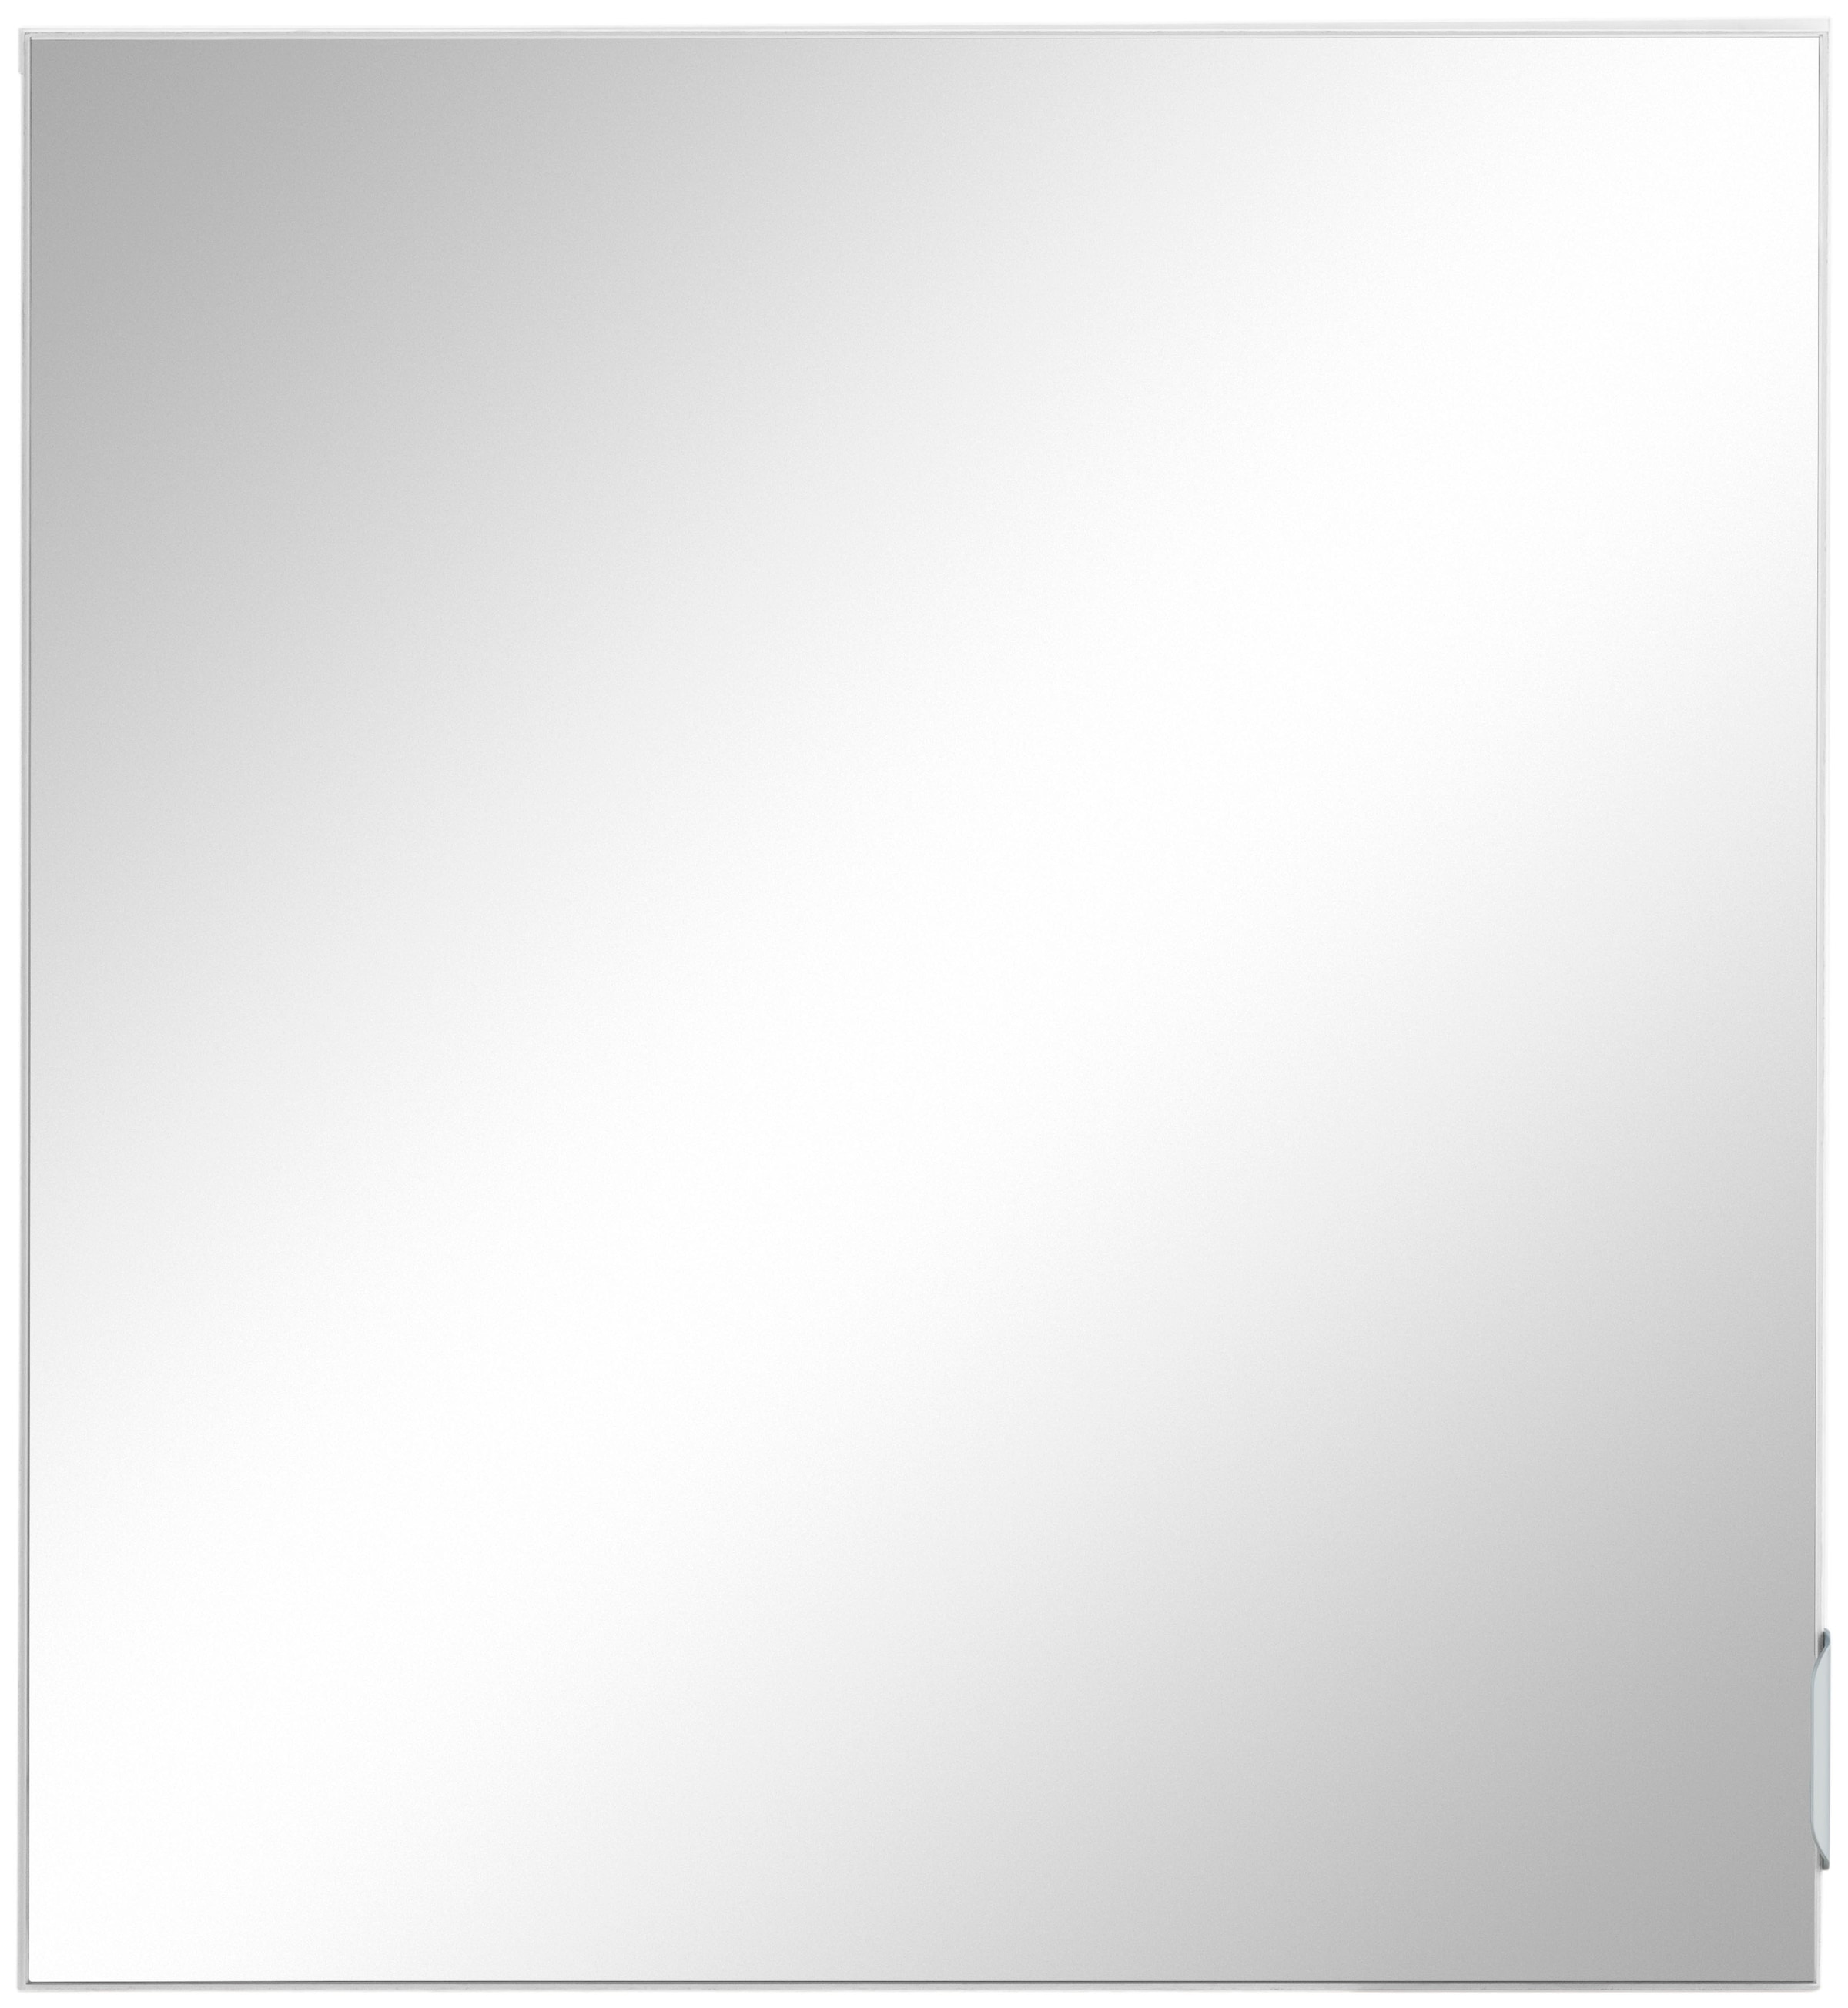 welltime Spiegelschrank »Lage, Badschrank, Badezimmerschrank, 60 cm breit«, Pflegeleichte Oberfläche, FSC®-zertifiziert